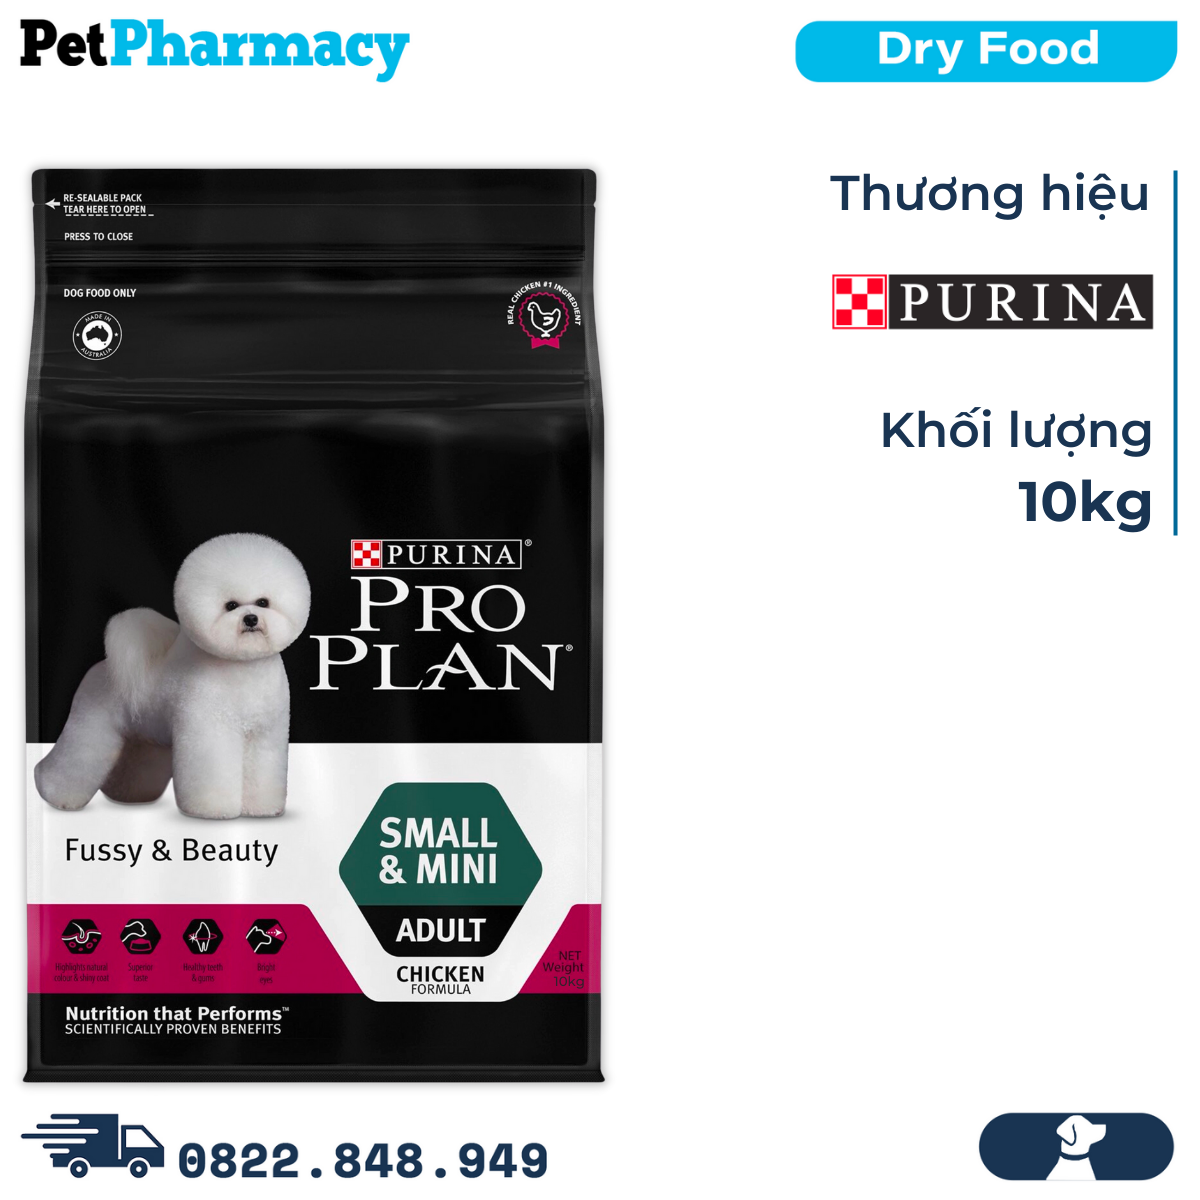  Thức ăn chó Purina PRO PLAN Small Mini Adult Fussy Beauty 10kg - chăm sóc da lông chó giống nhỏ PetPharmacy 